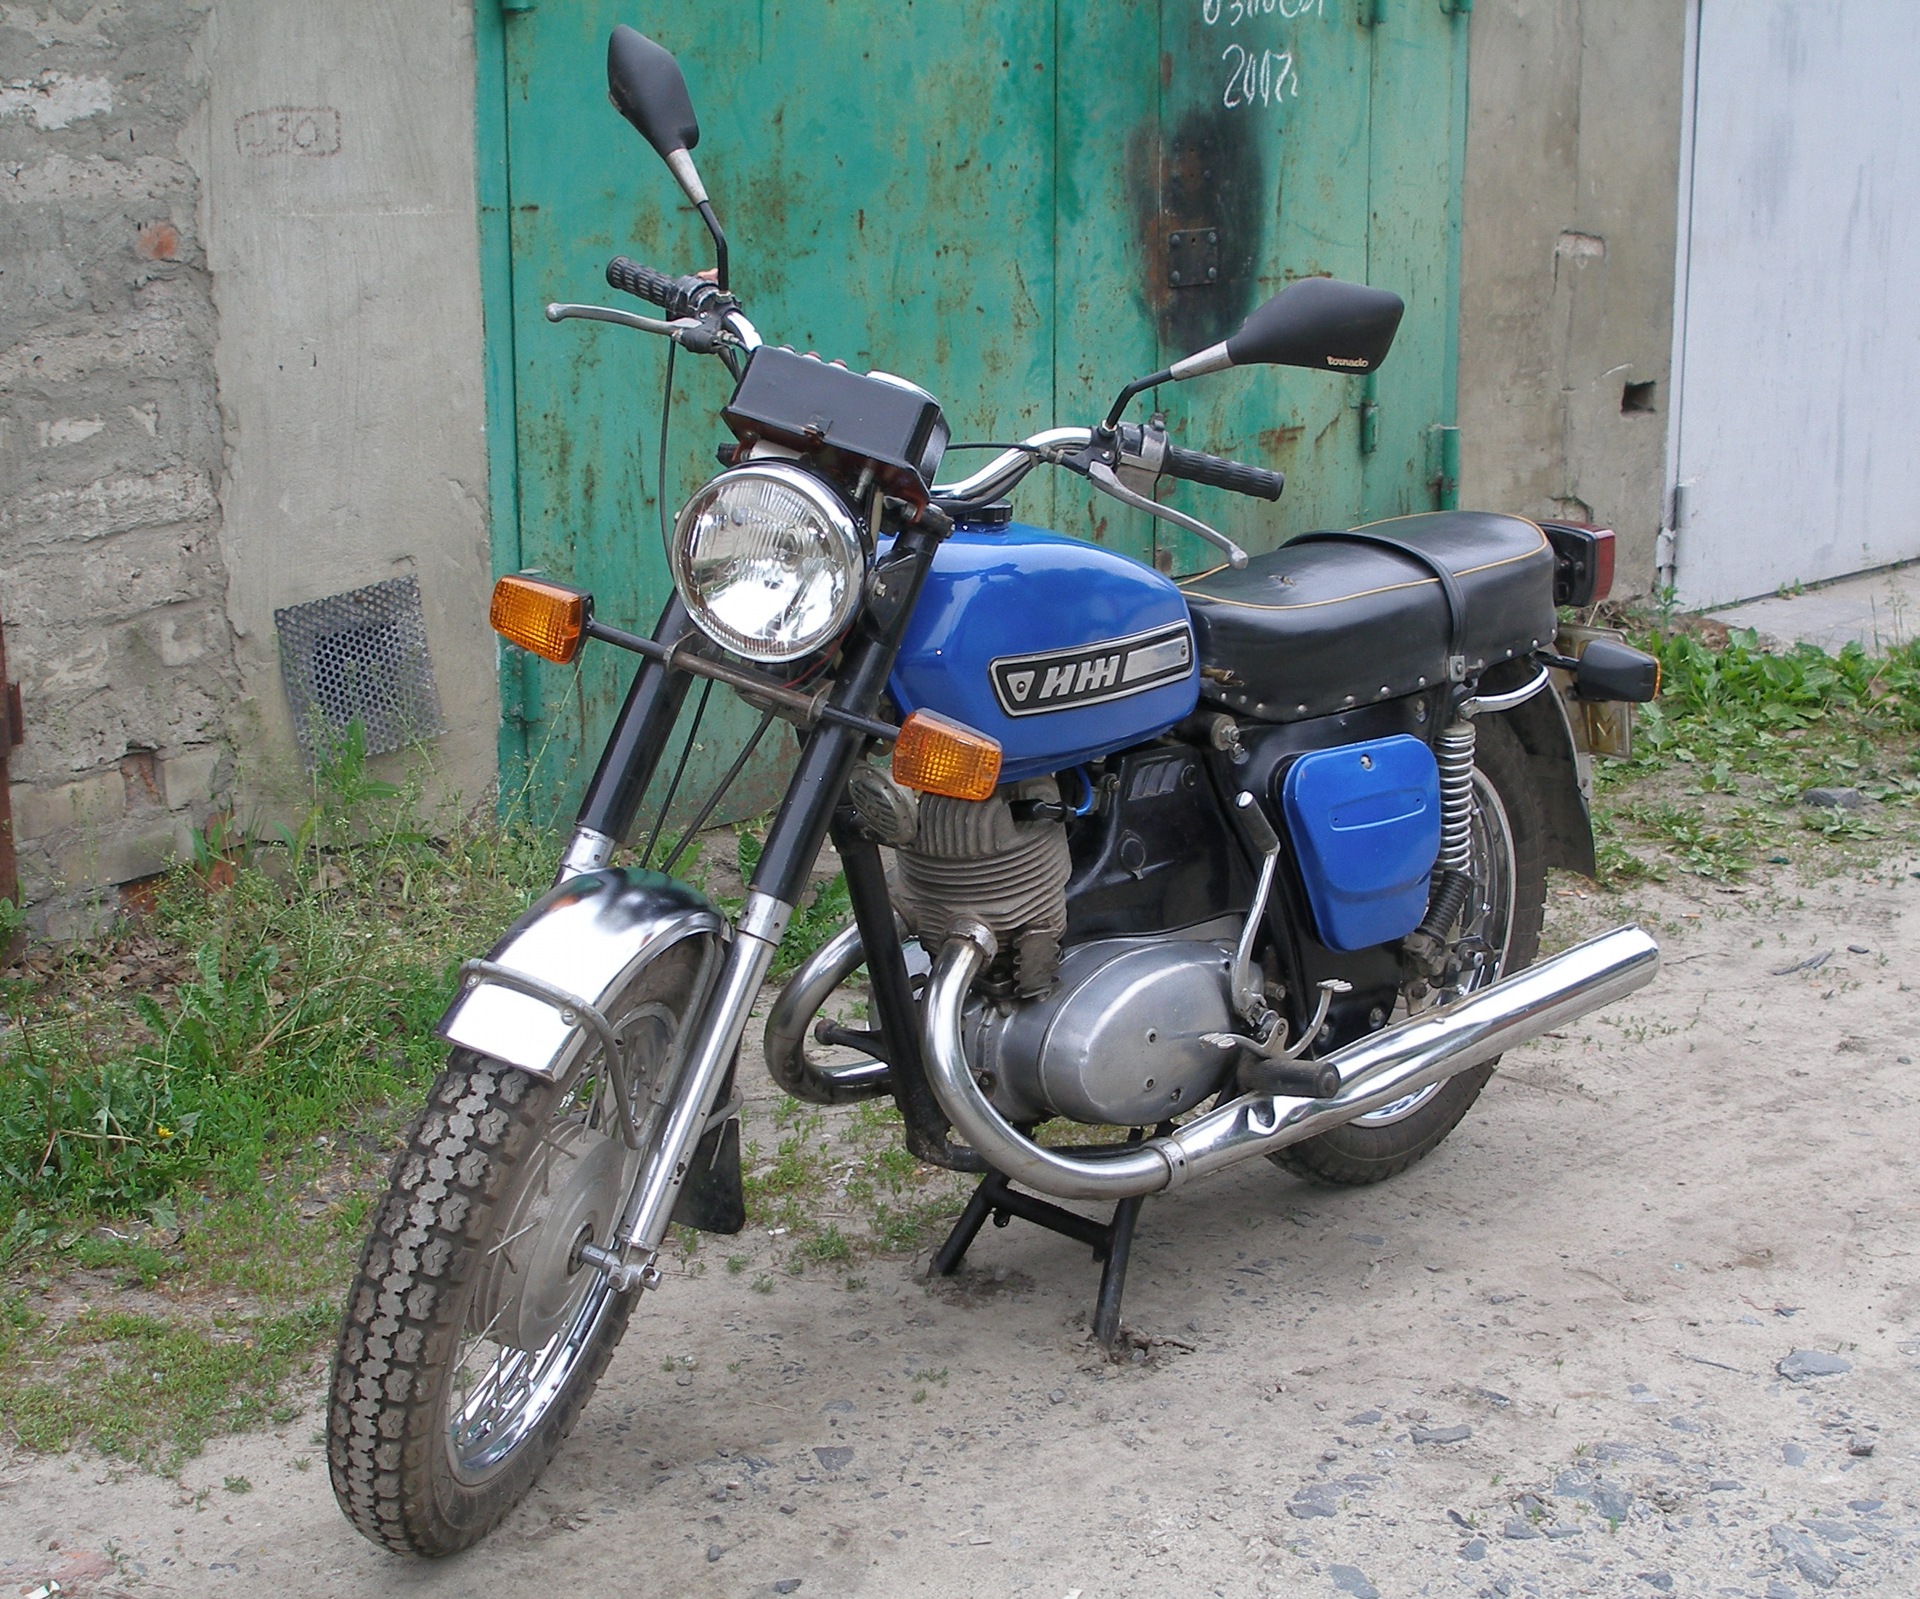 Мотоцикл иж юпитер 3 — советский мотоцикл за доступные деньги